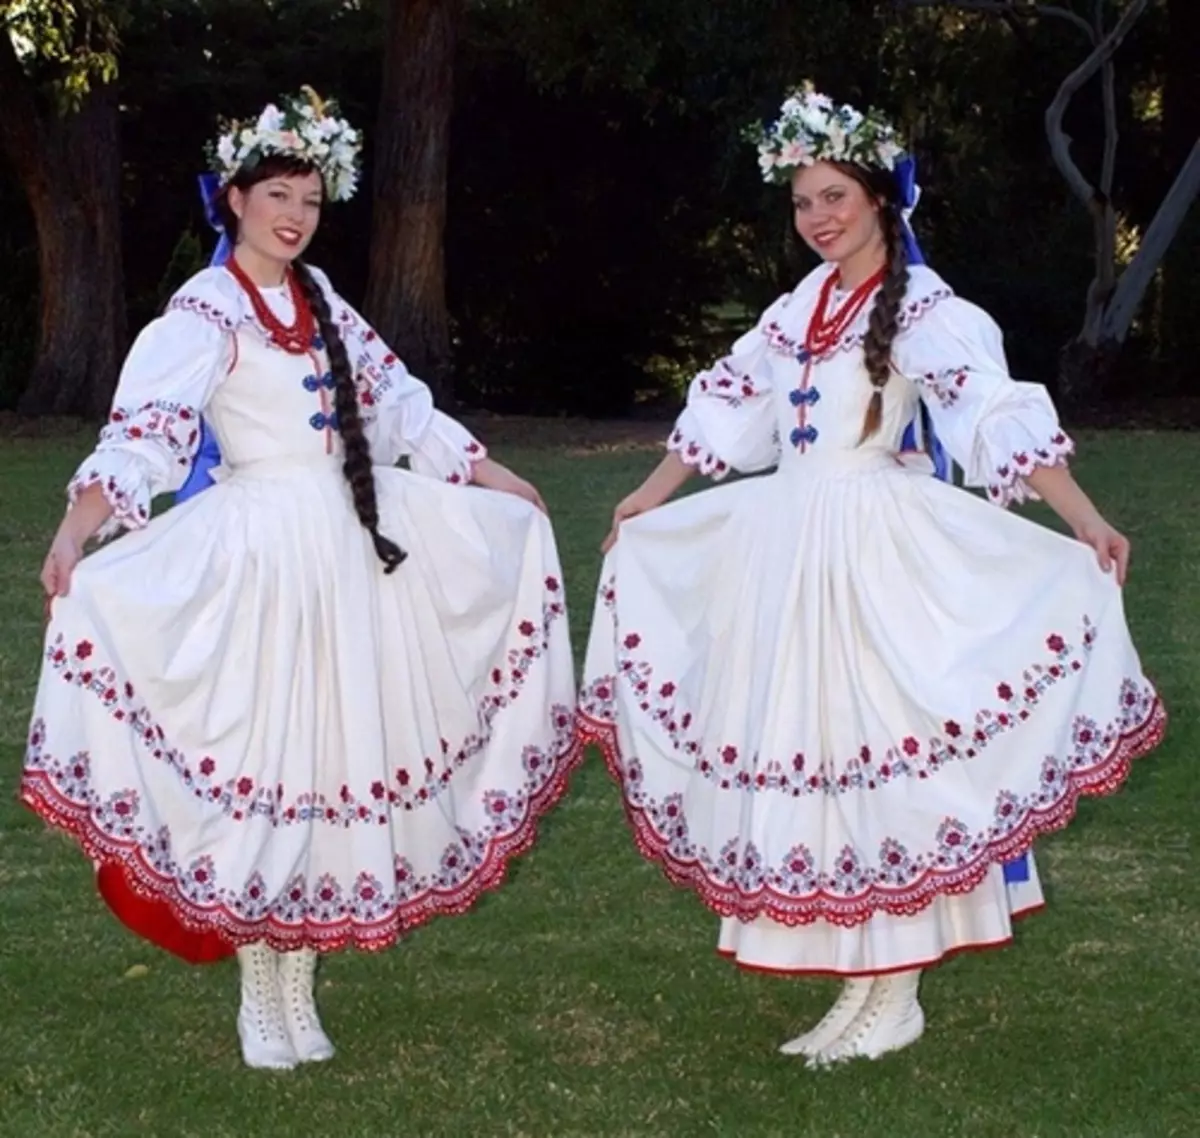 vestit de nacionalitat polonesa (30 fotos): vestits tradicionals per a les dones, vestit masculí i femení de la noblesa polonesa, història 1369_22